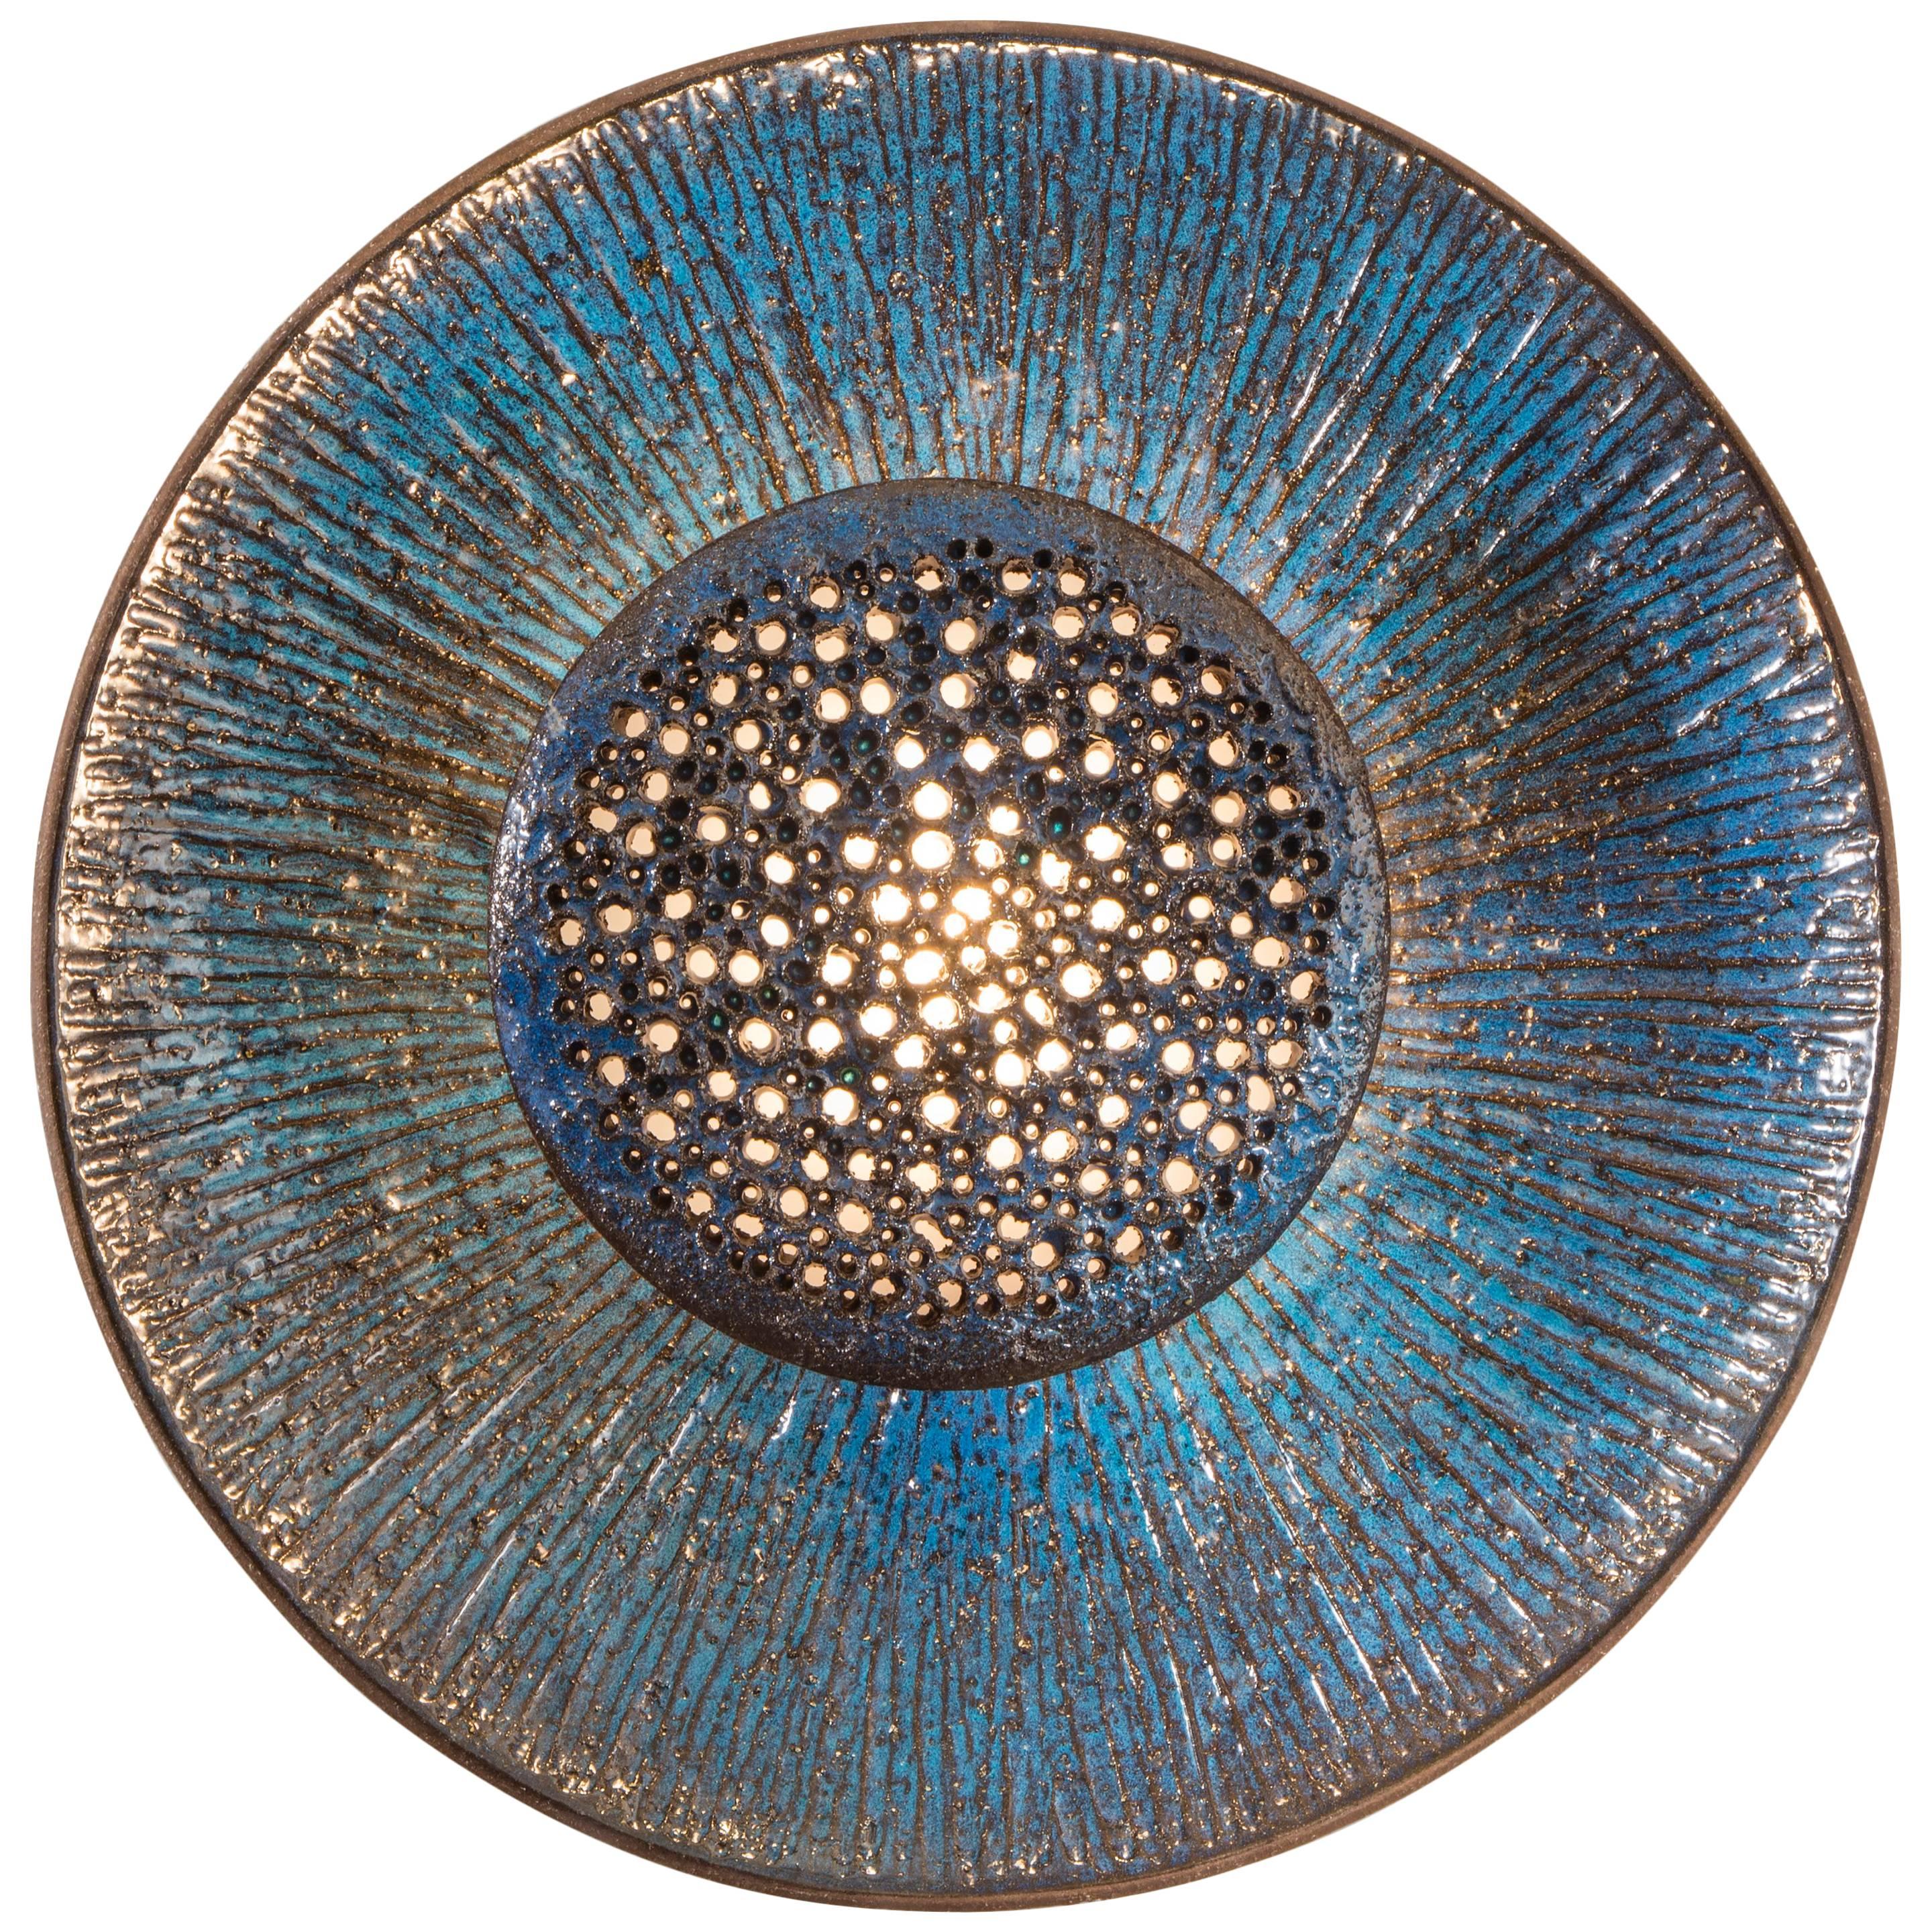 Sejer Keramikfabrik, Rare and Large Danish Stoneware Blue Glazed Sconce